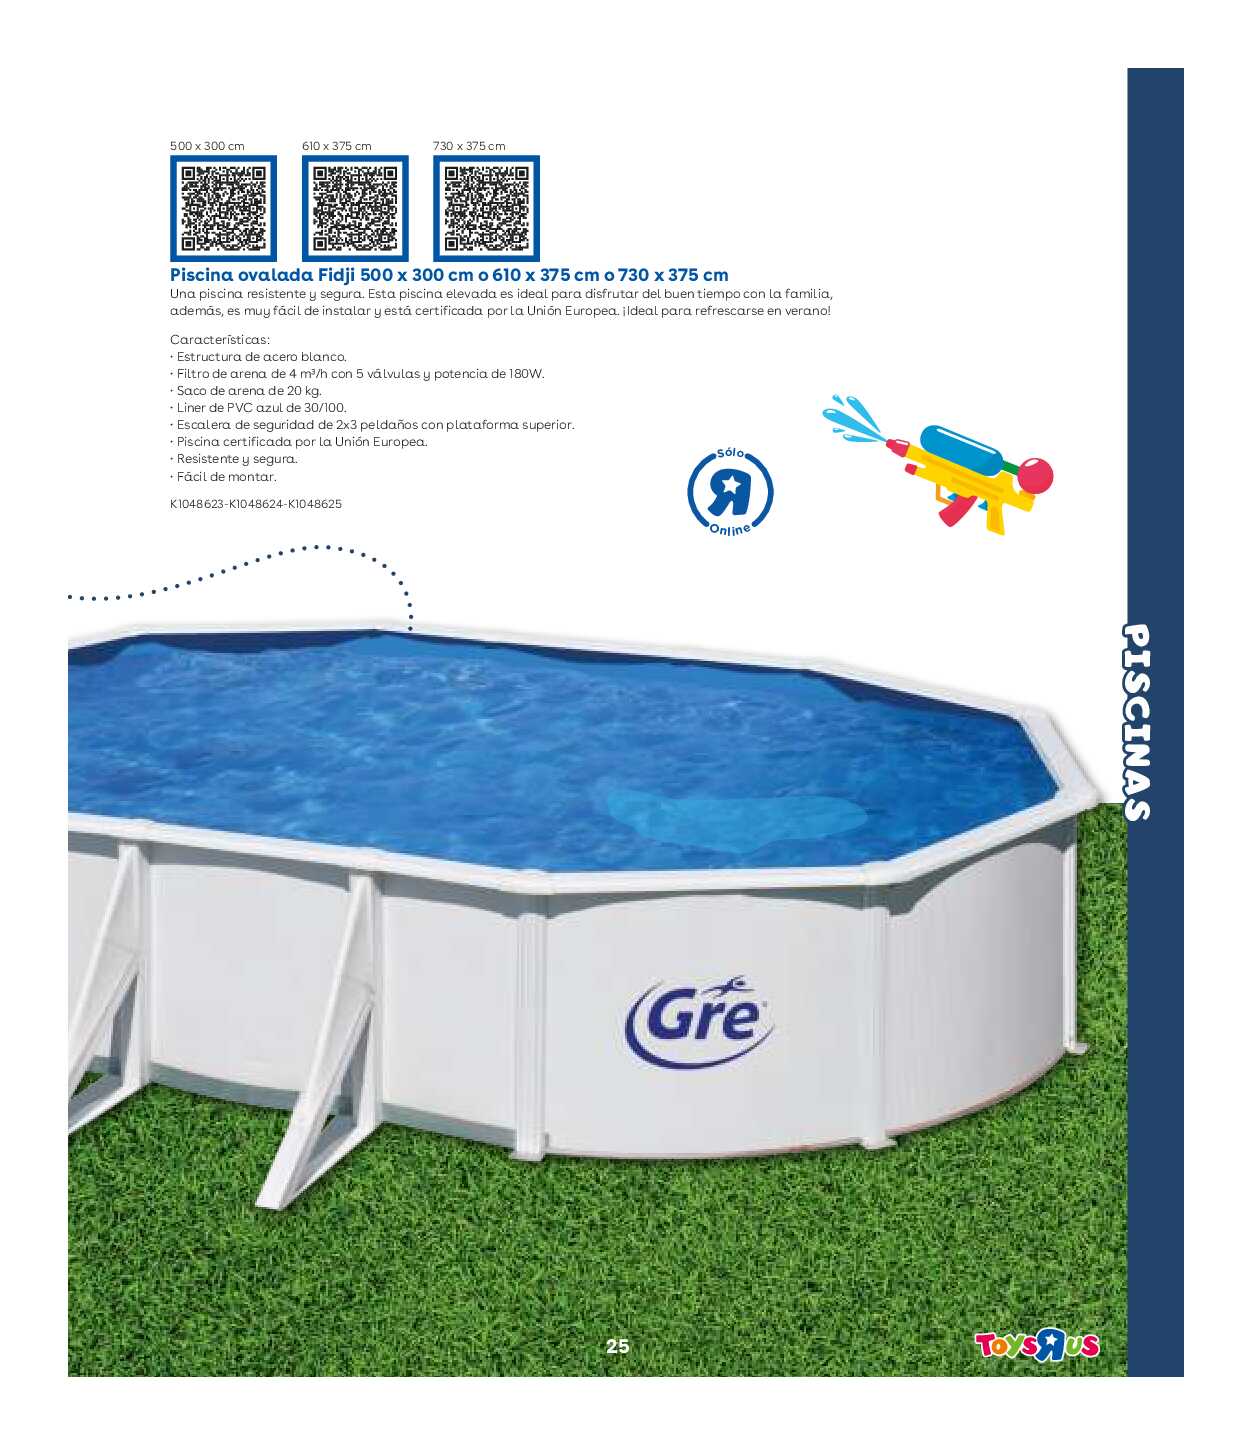 Catálogo de piscinas Toys R Us. Página 25